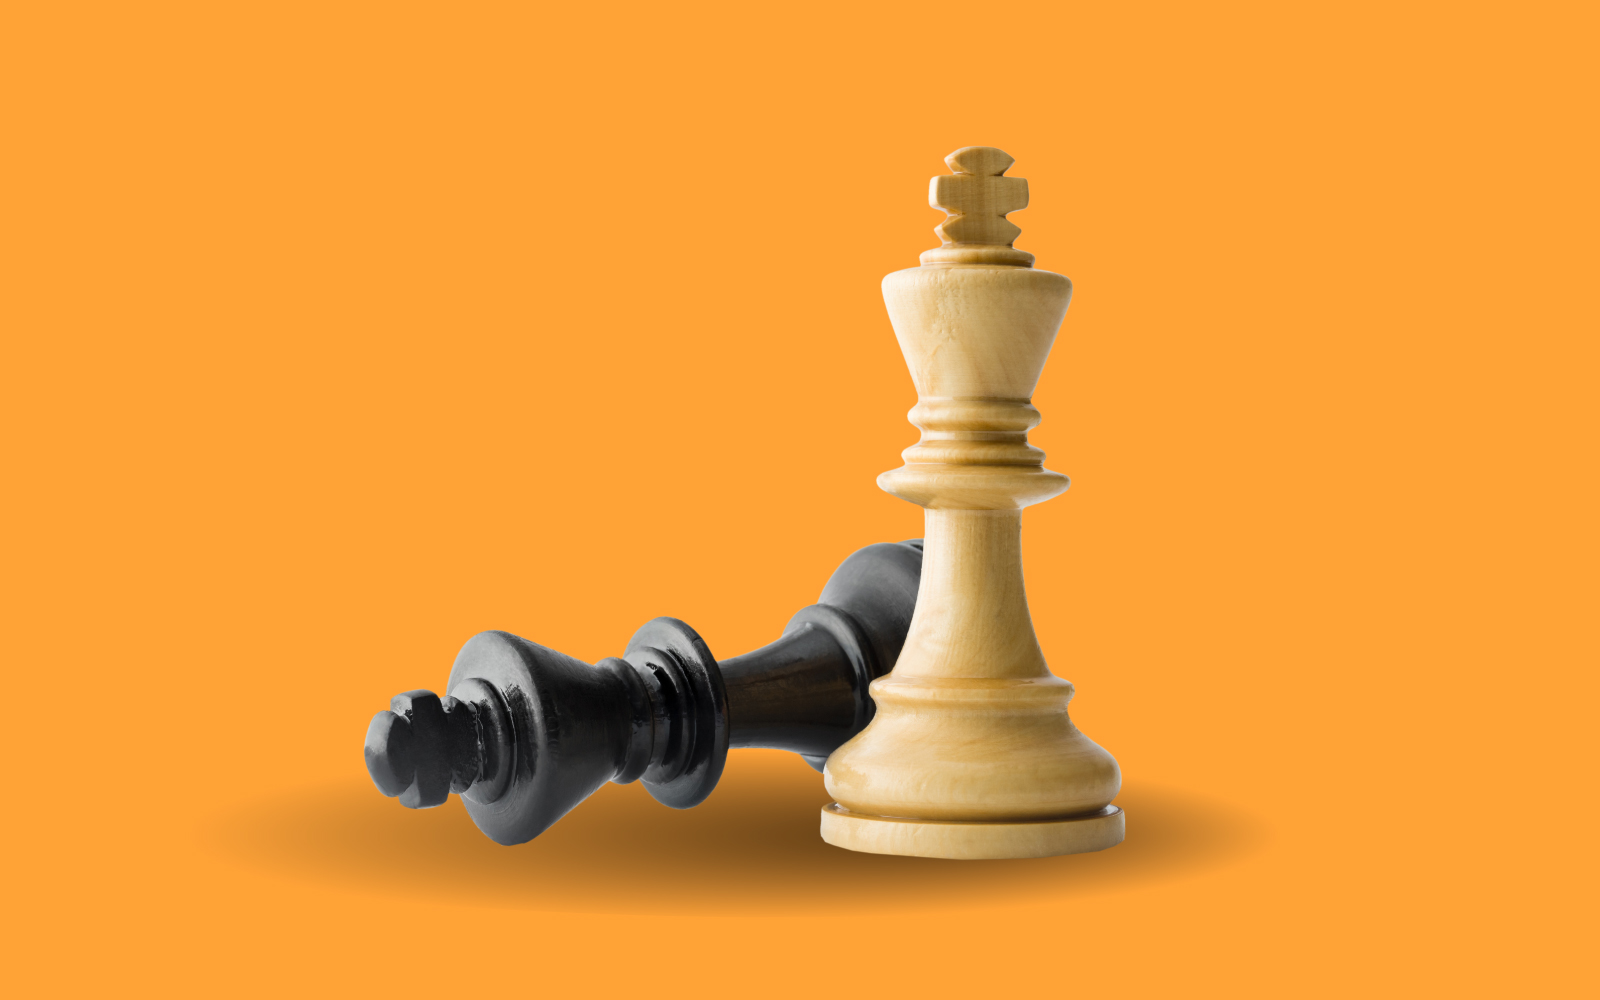 Tutorial: ¿Cómo jugar ajedrez en linea con amigos usando un móvil